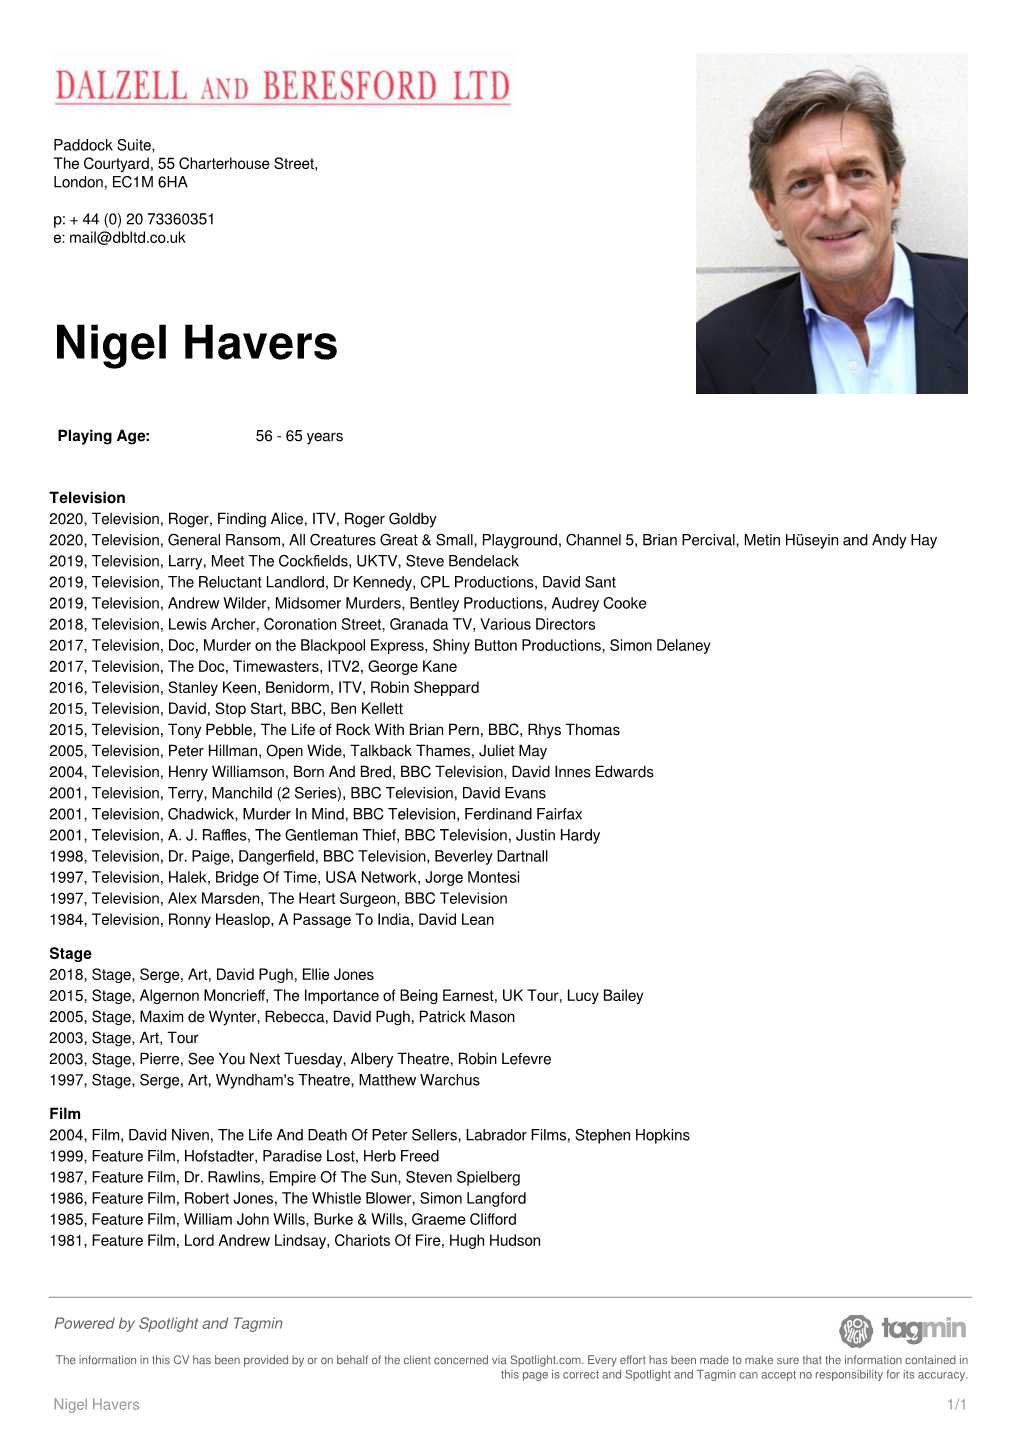 Nigel Havers